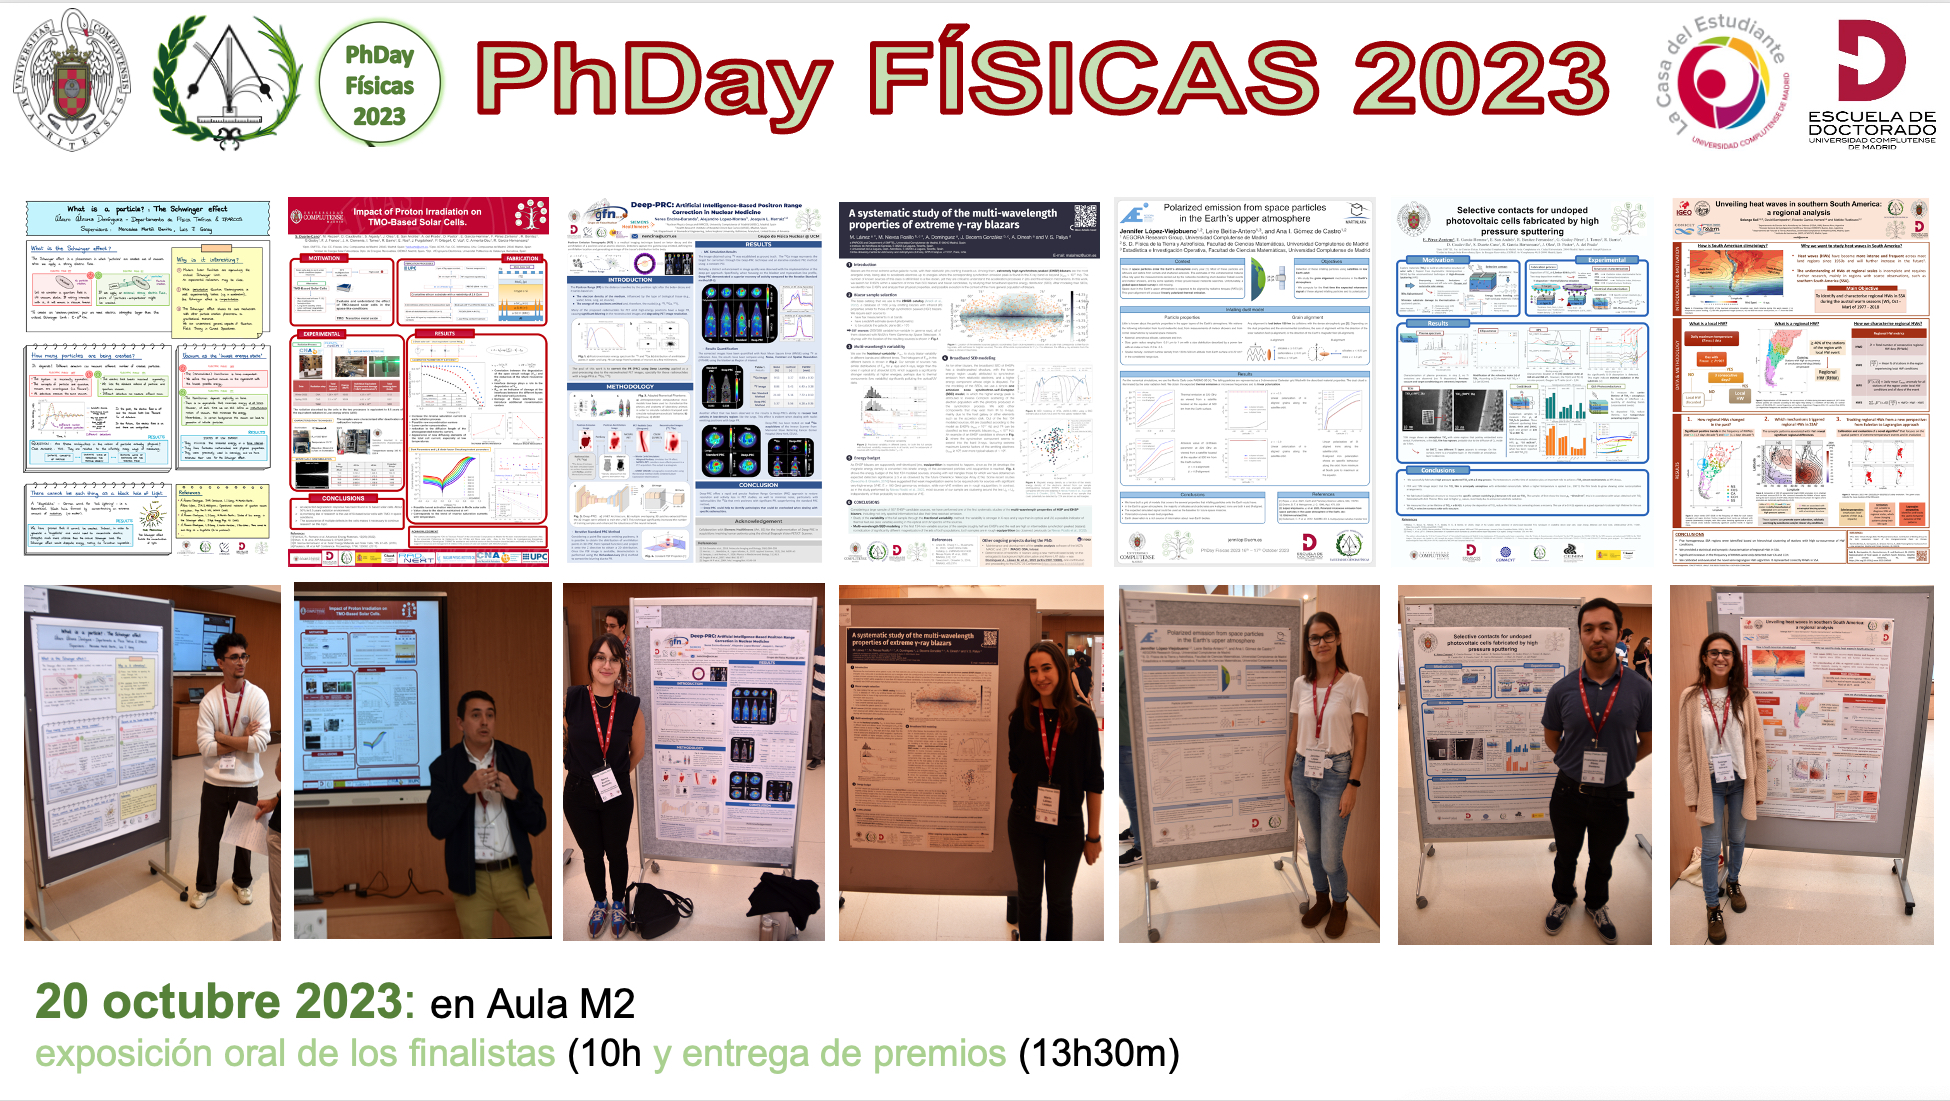 PhDay Físicas 2023 (16 al 20 oct 2023) 